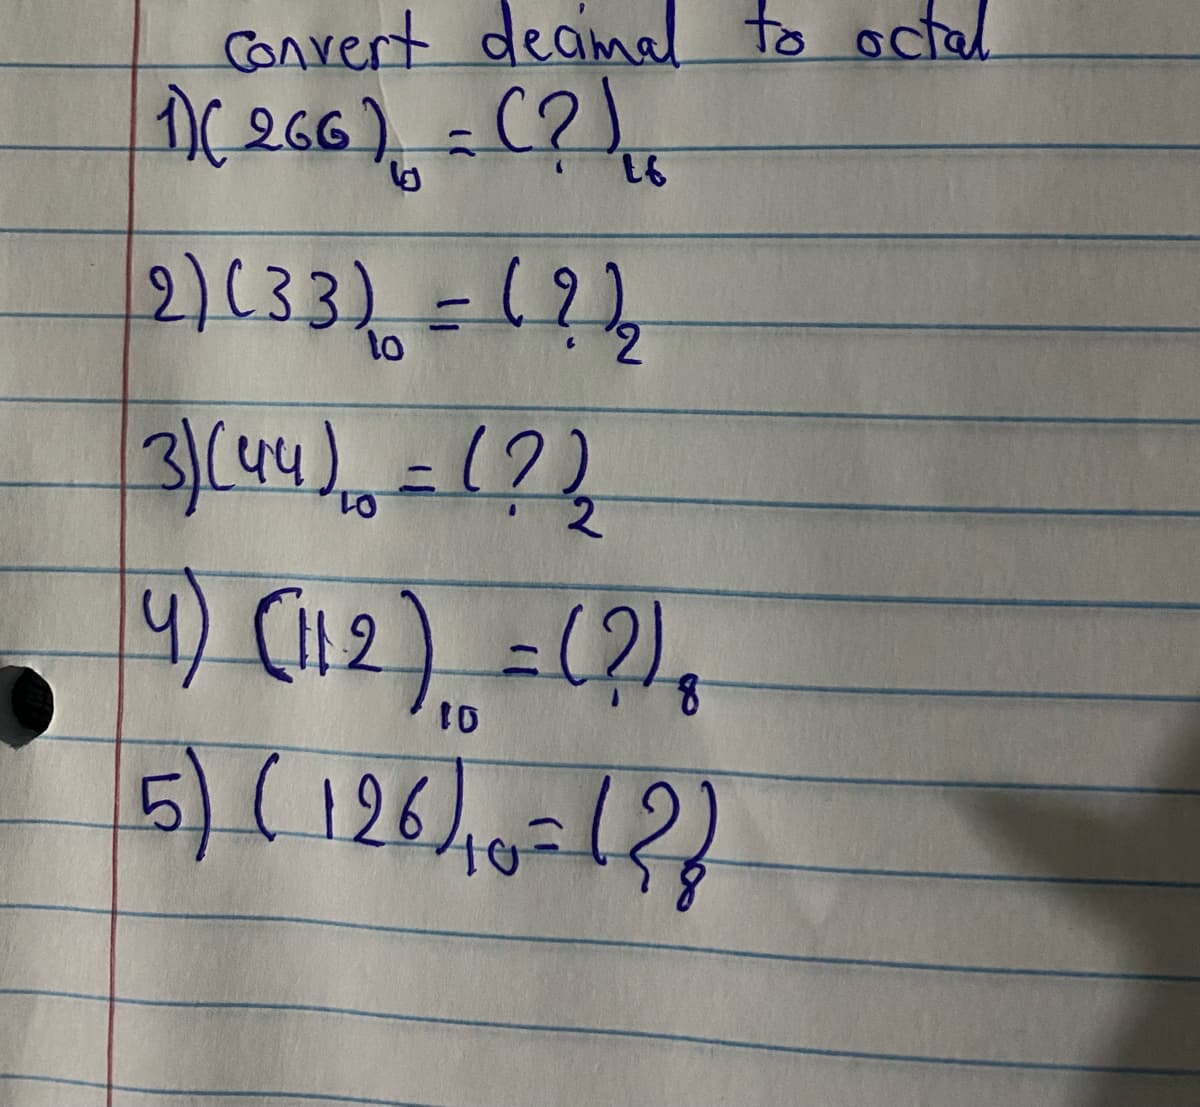 convert deamal to octal.
2)(33)=1?,
3/(44)=12)
2.
9) (12) =(?),
5)(126).0=12
